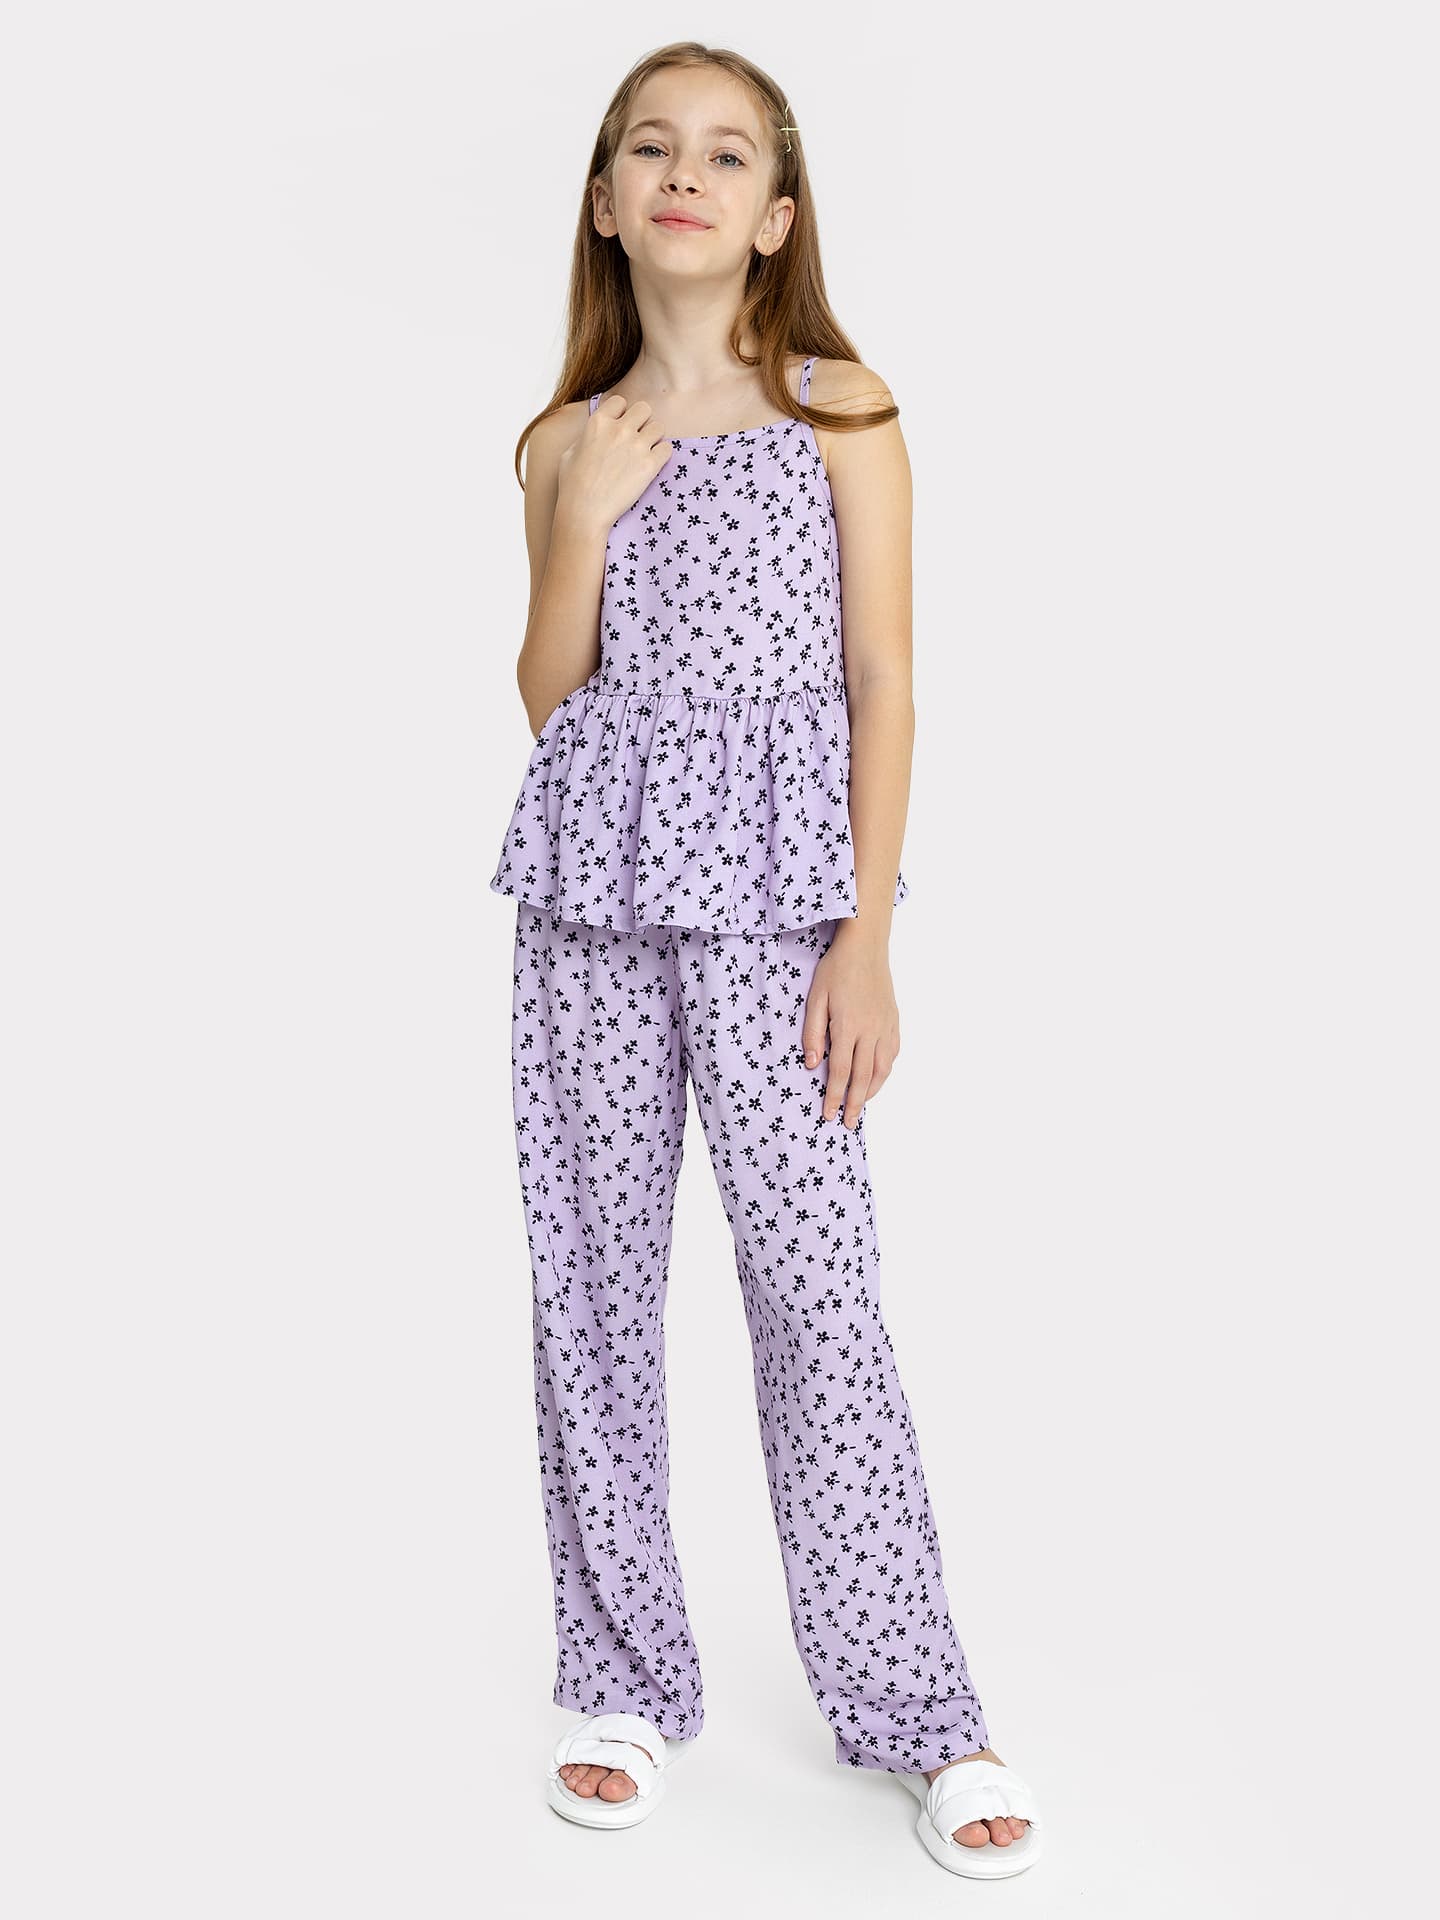 Комплект для девочки (топ, брюки) в фиолетовом цвете с рисунком цветов